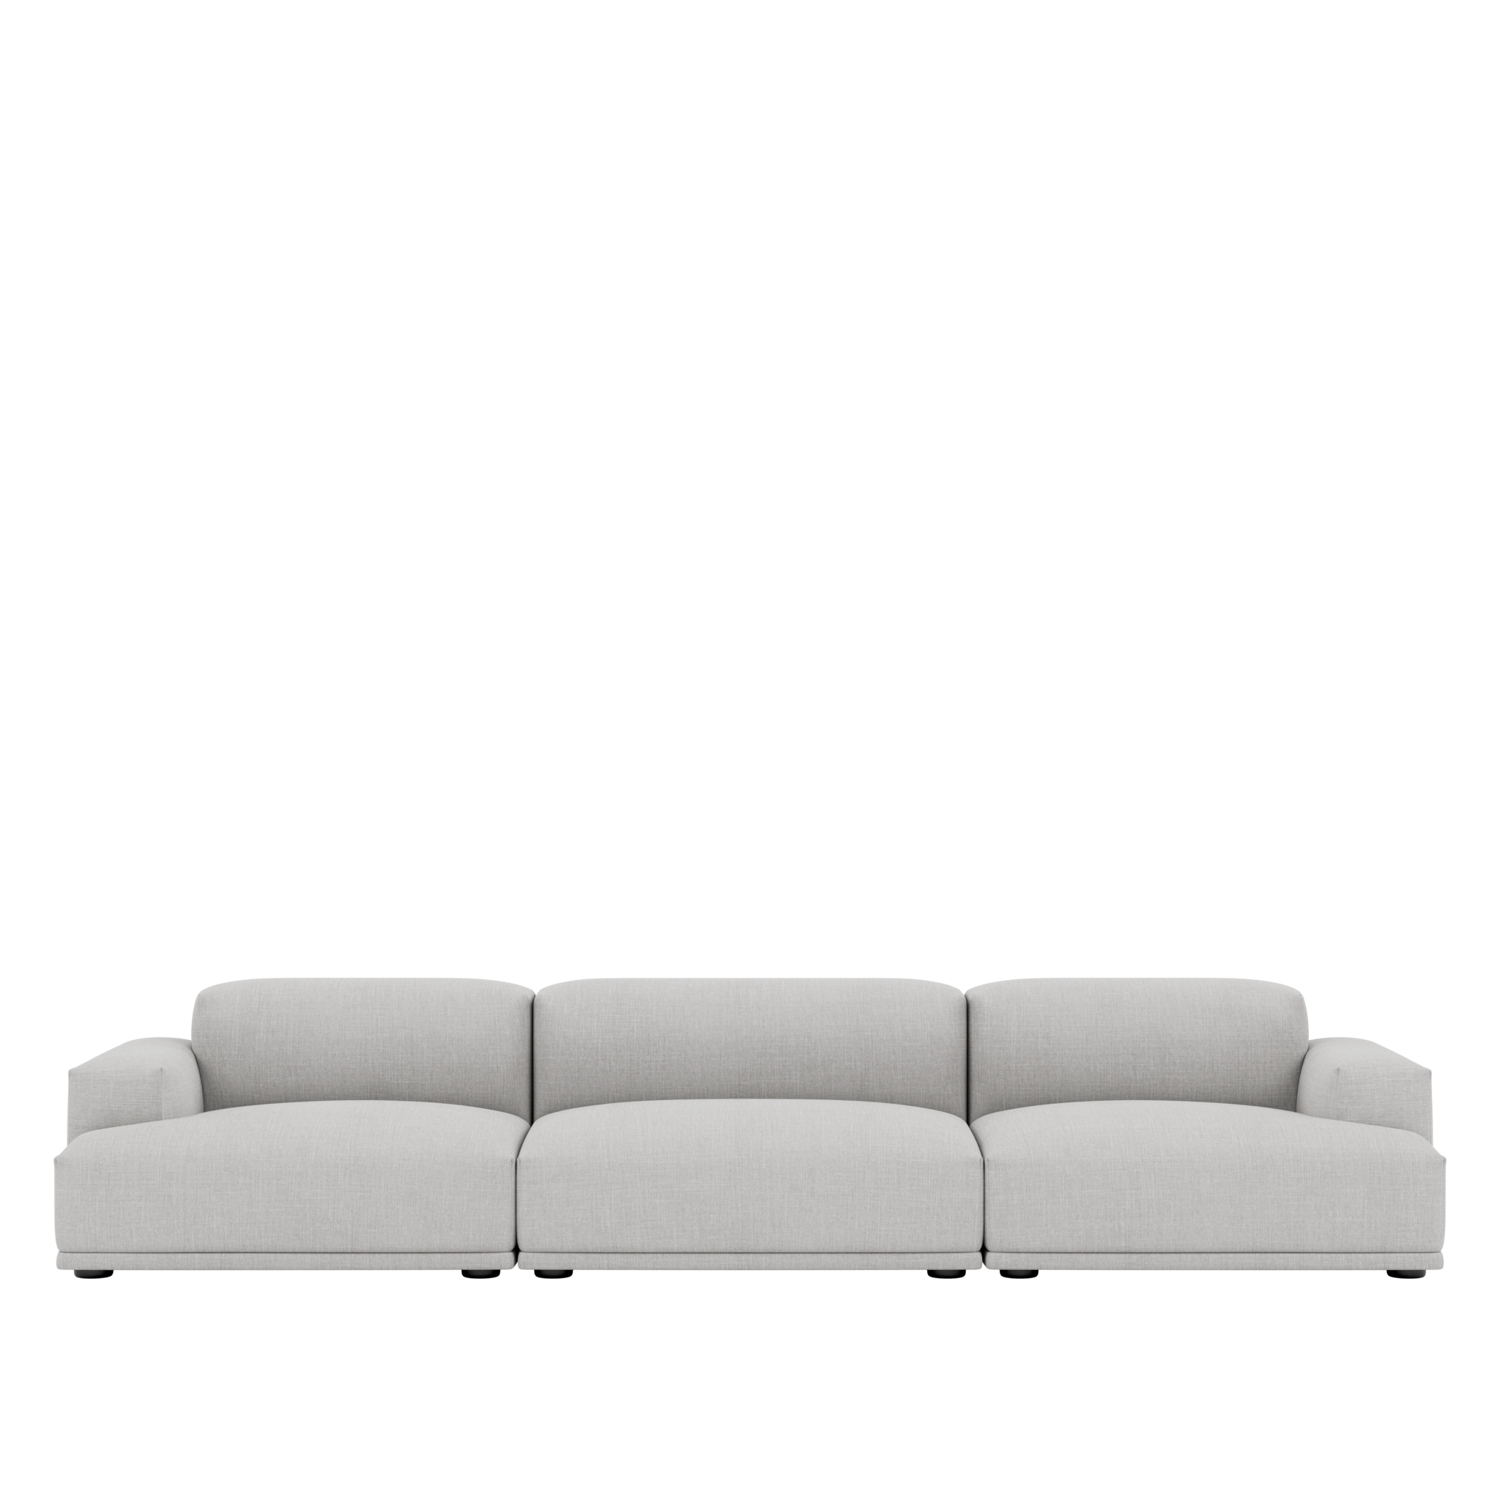 Connect Modular Sofa System Customize, Modular Sofa Furniture System